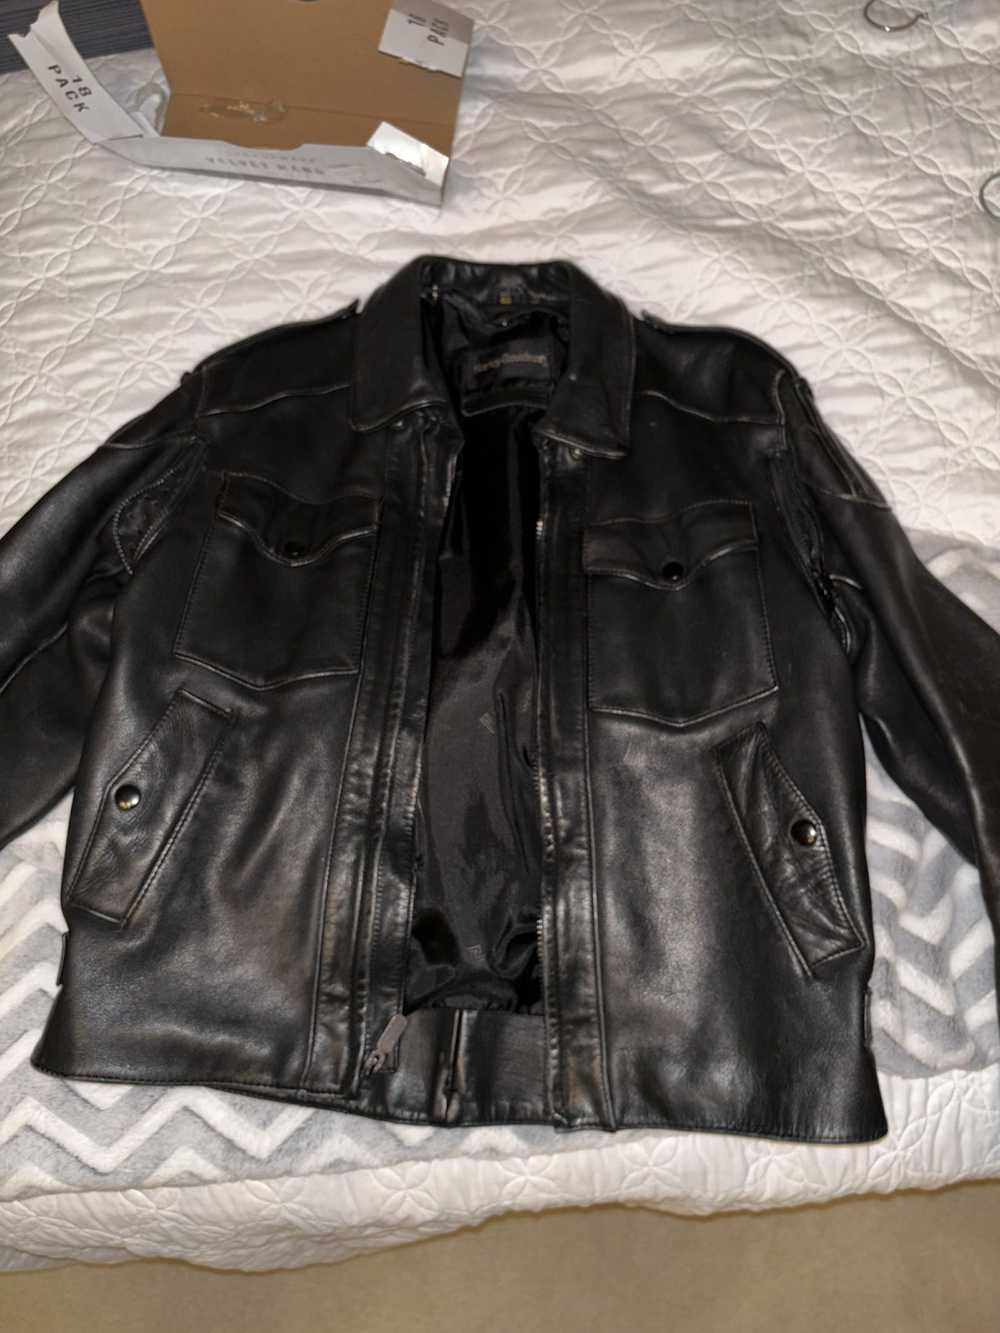 Harley Davidson Harley Davidson leather jacket - image 3